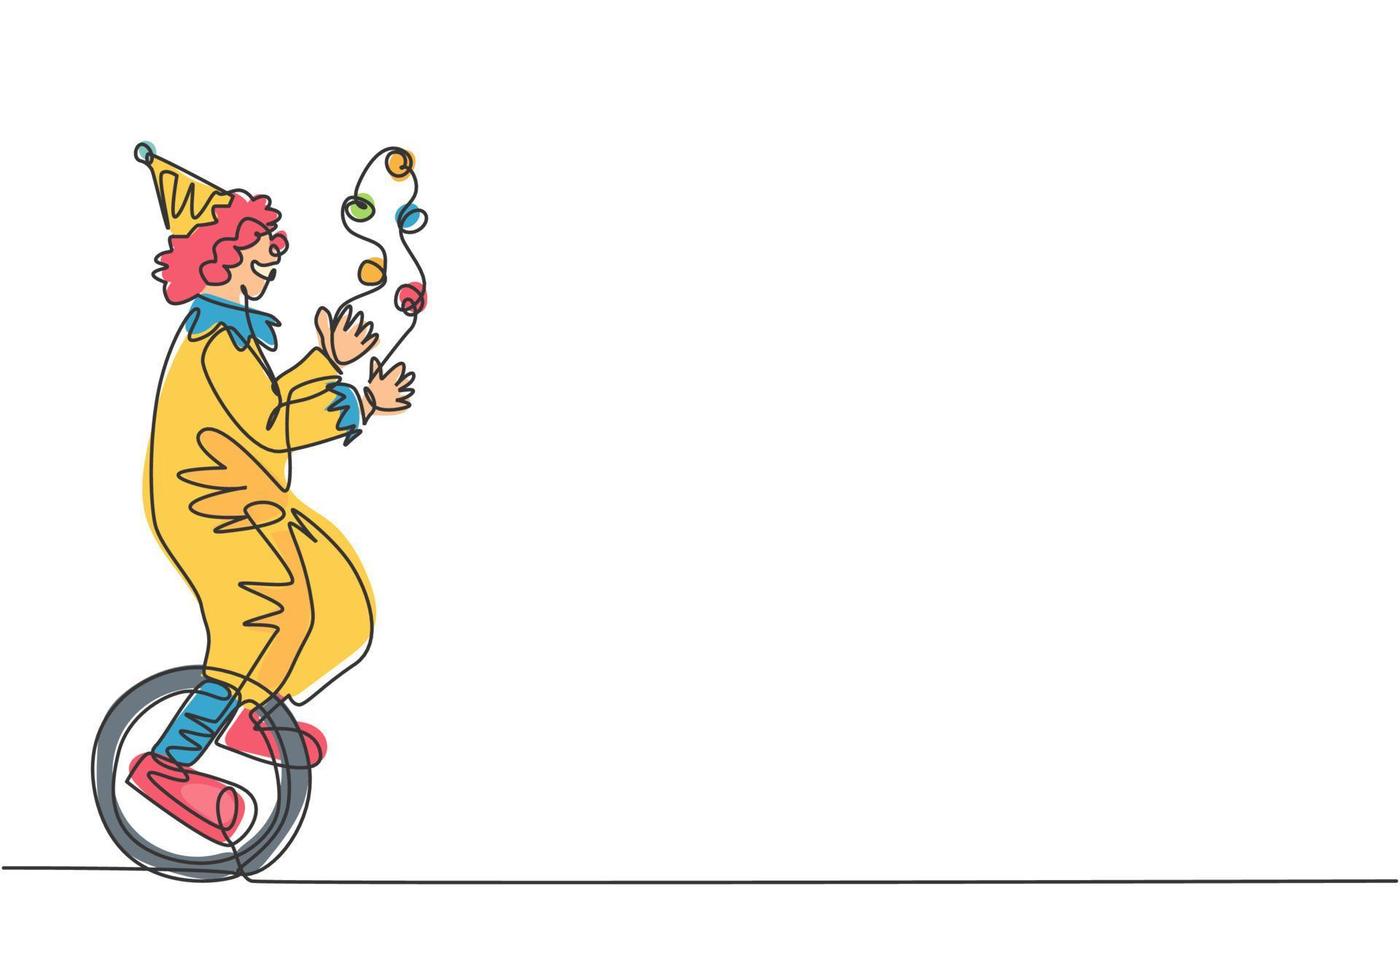 kontinuerlig en linje som ritar en manlig clown jonglering på en cykel. den spelande clownen var väldigt rolig och underhöll publiken. cirkushow -evenemang. enkel linje rita design vektor grafisk illustration.